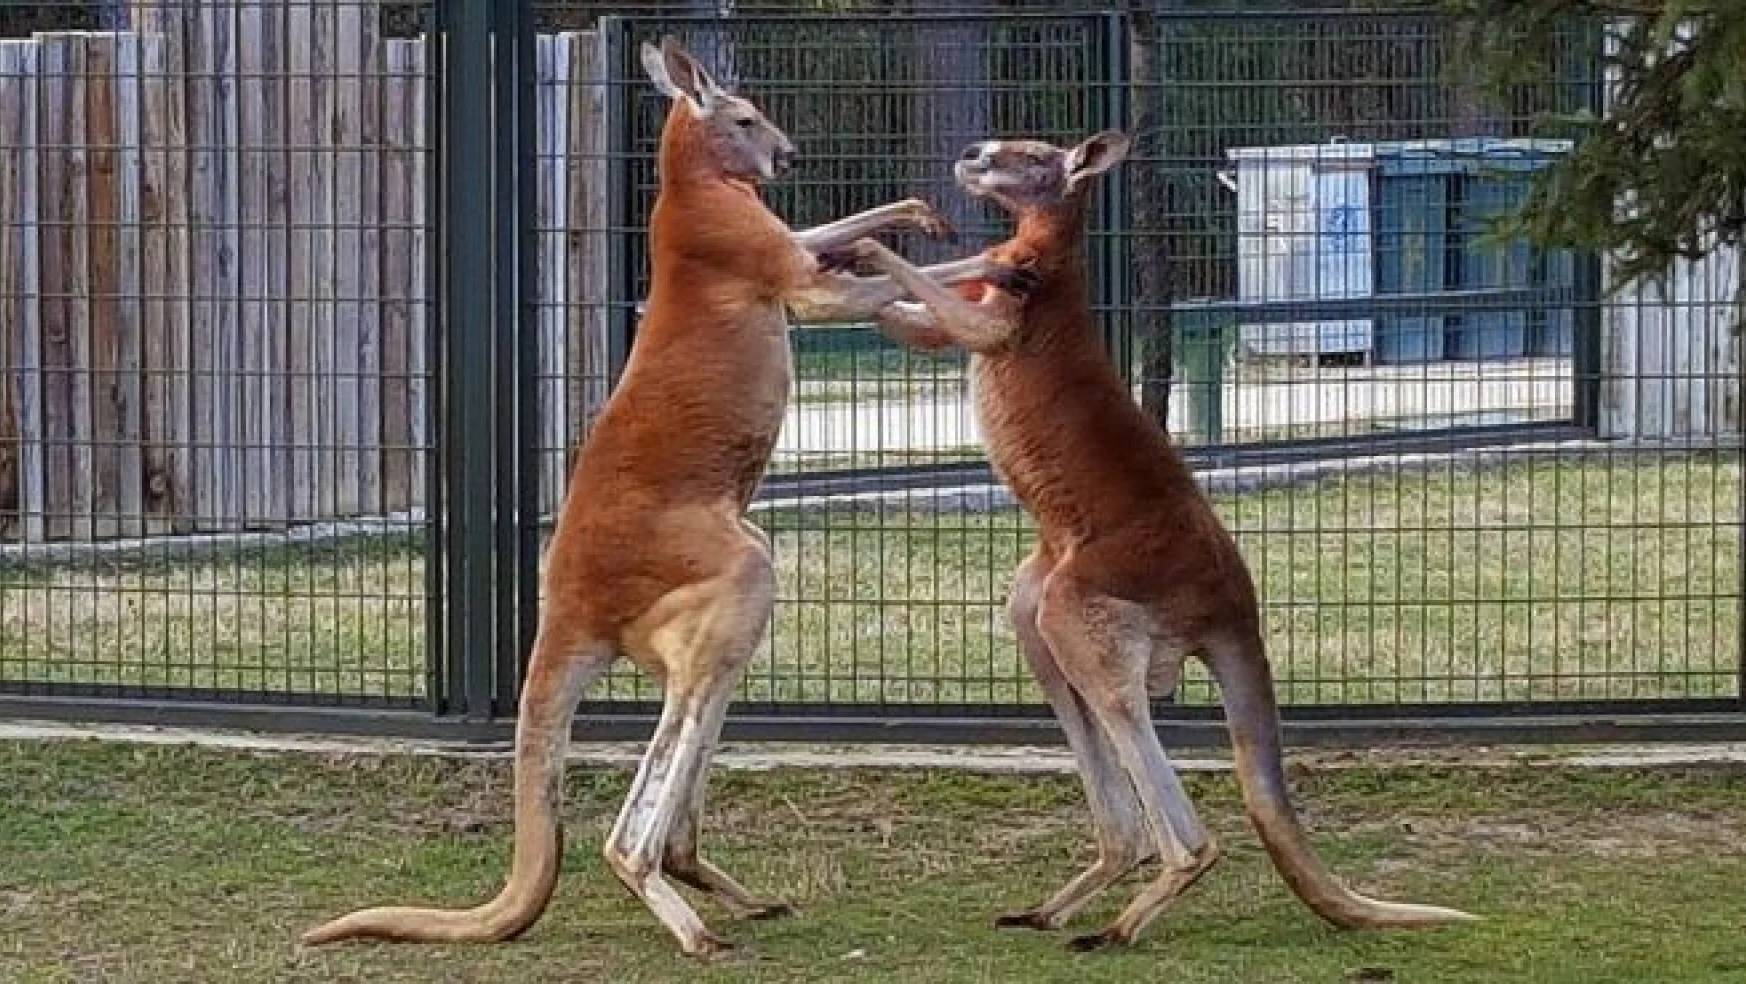 Kanguruların 'boks maçı' kameralara yansıdı